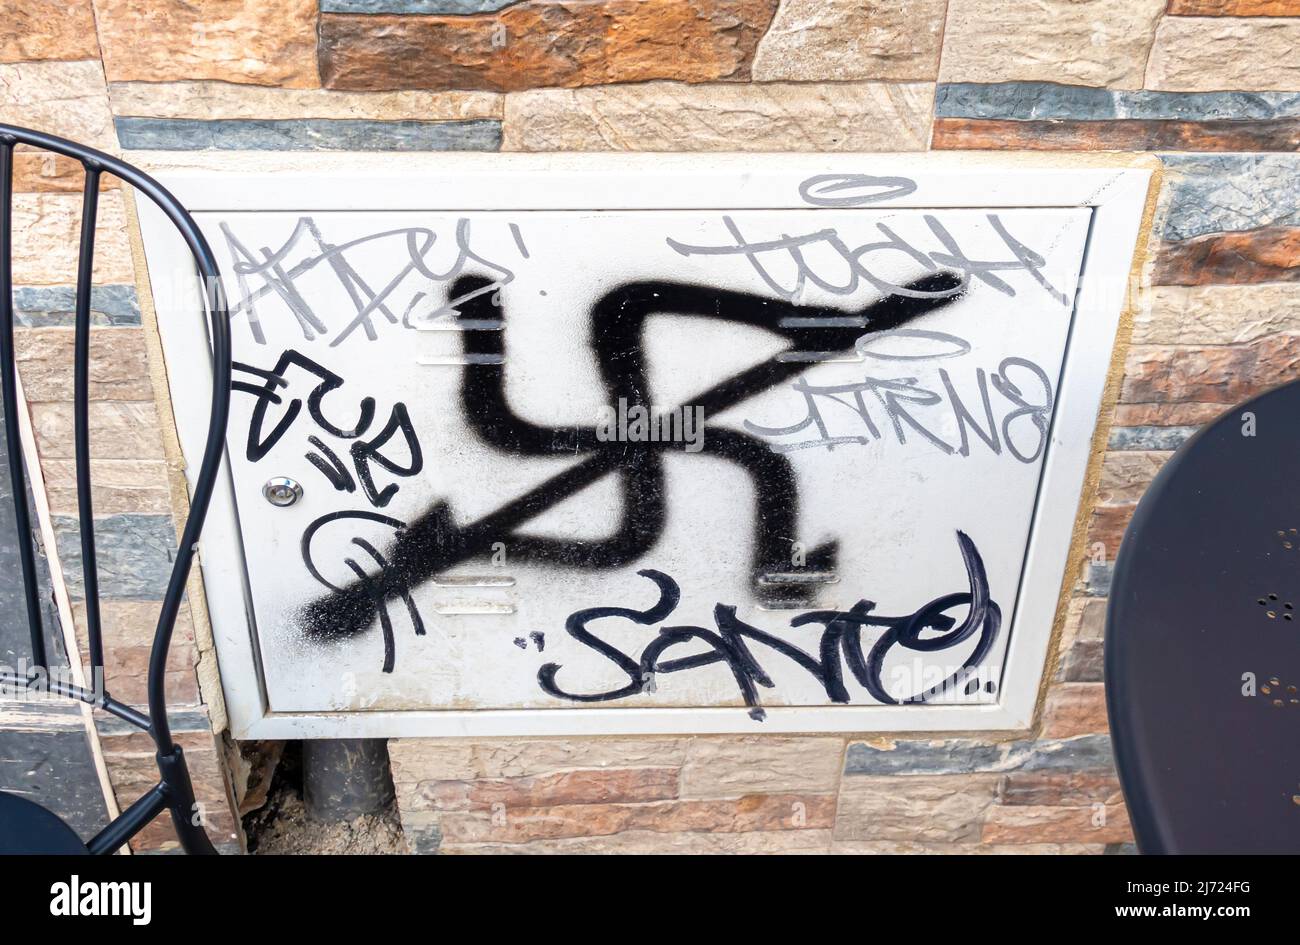 Tachado svastika signo - graffiti en la pared en Sevilla, Andalucía, España. Antfa graffiti swastika swastikas símbolos nazis cruzaron Foto de stock